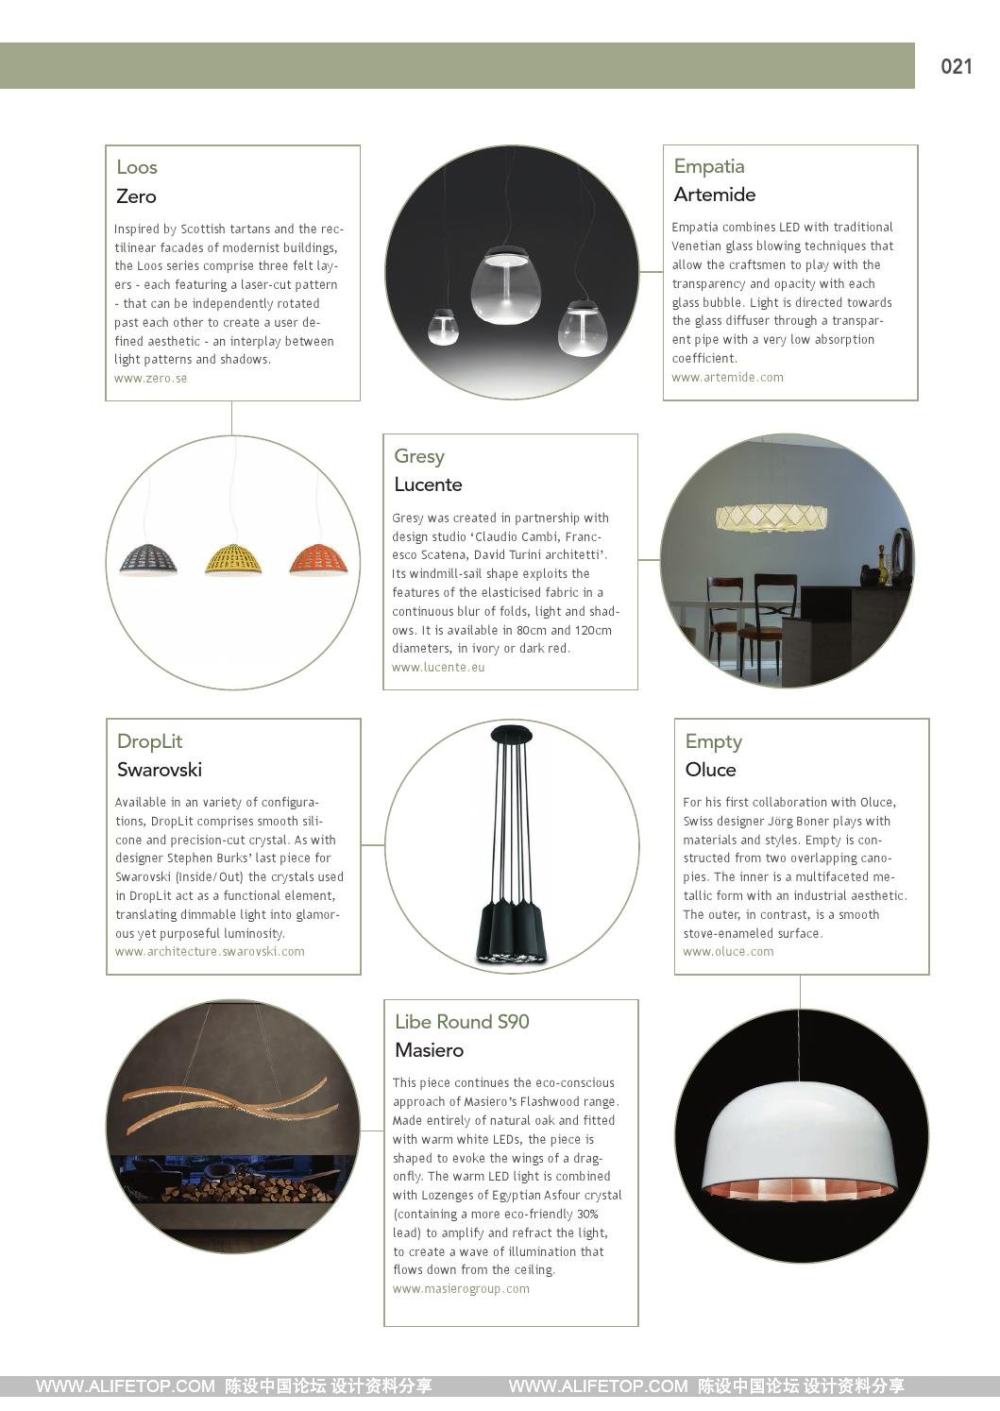 darc-3灯具照明设计杂志_darc-3灯具照明设计杂志 (21).jpg